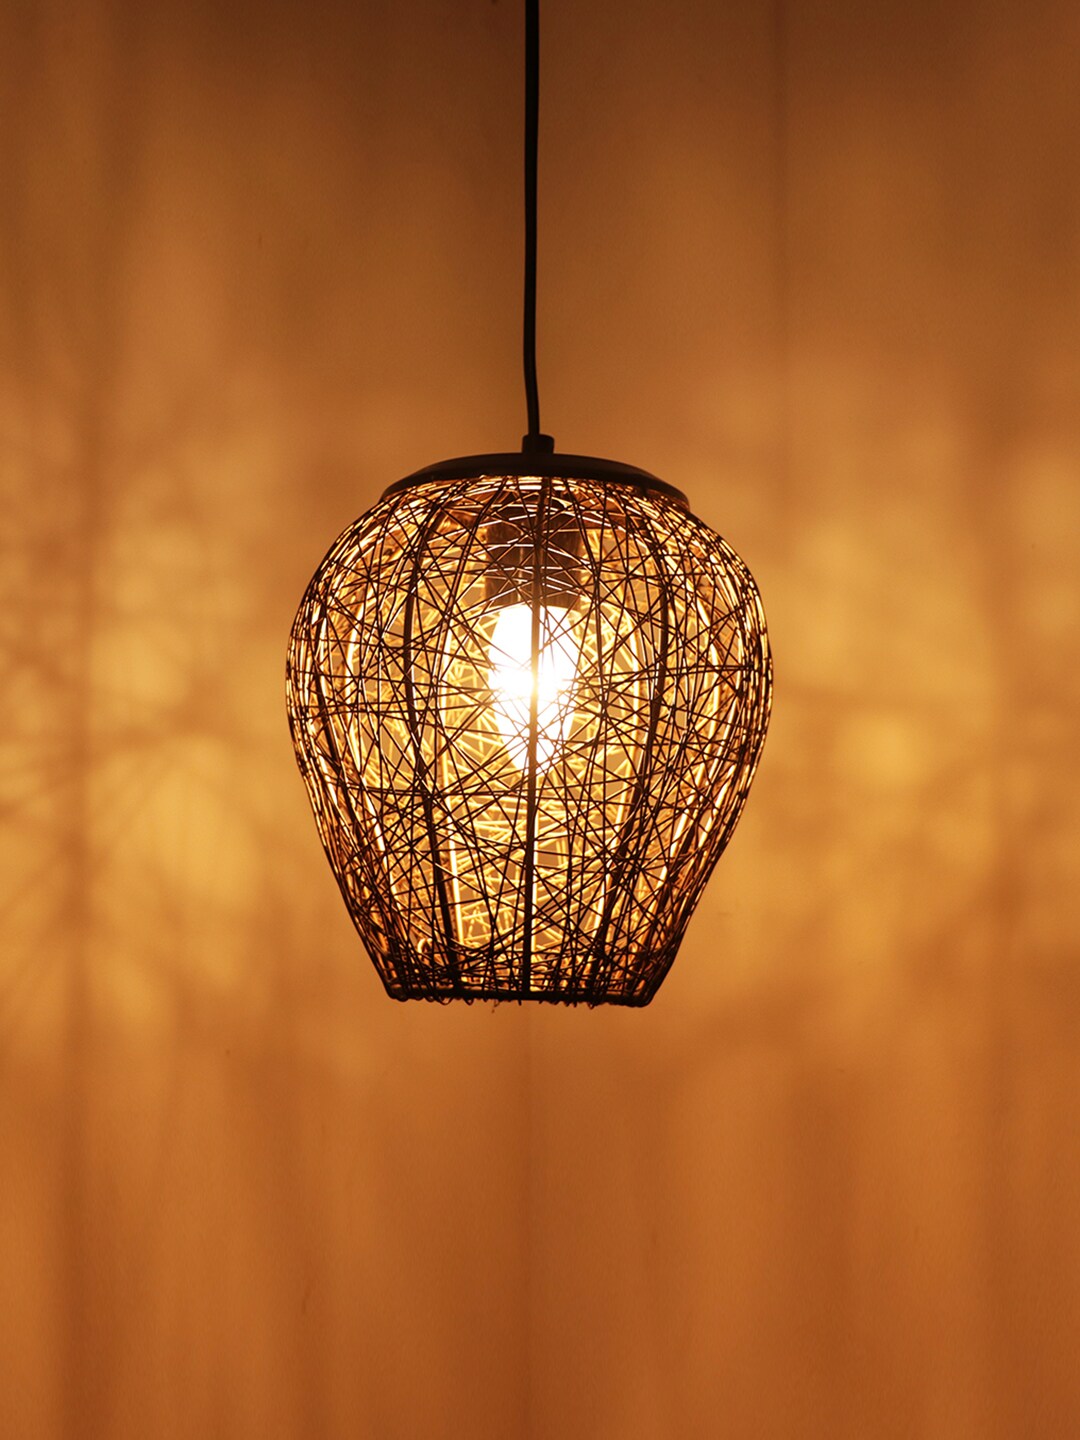 ExclusiveLane Black Iron Iron Hanging Pendant Ceiling Lamp Price in India